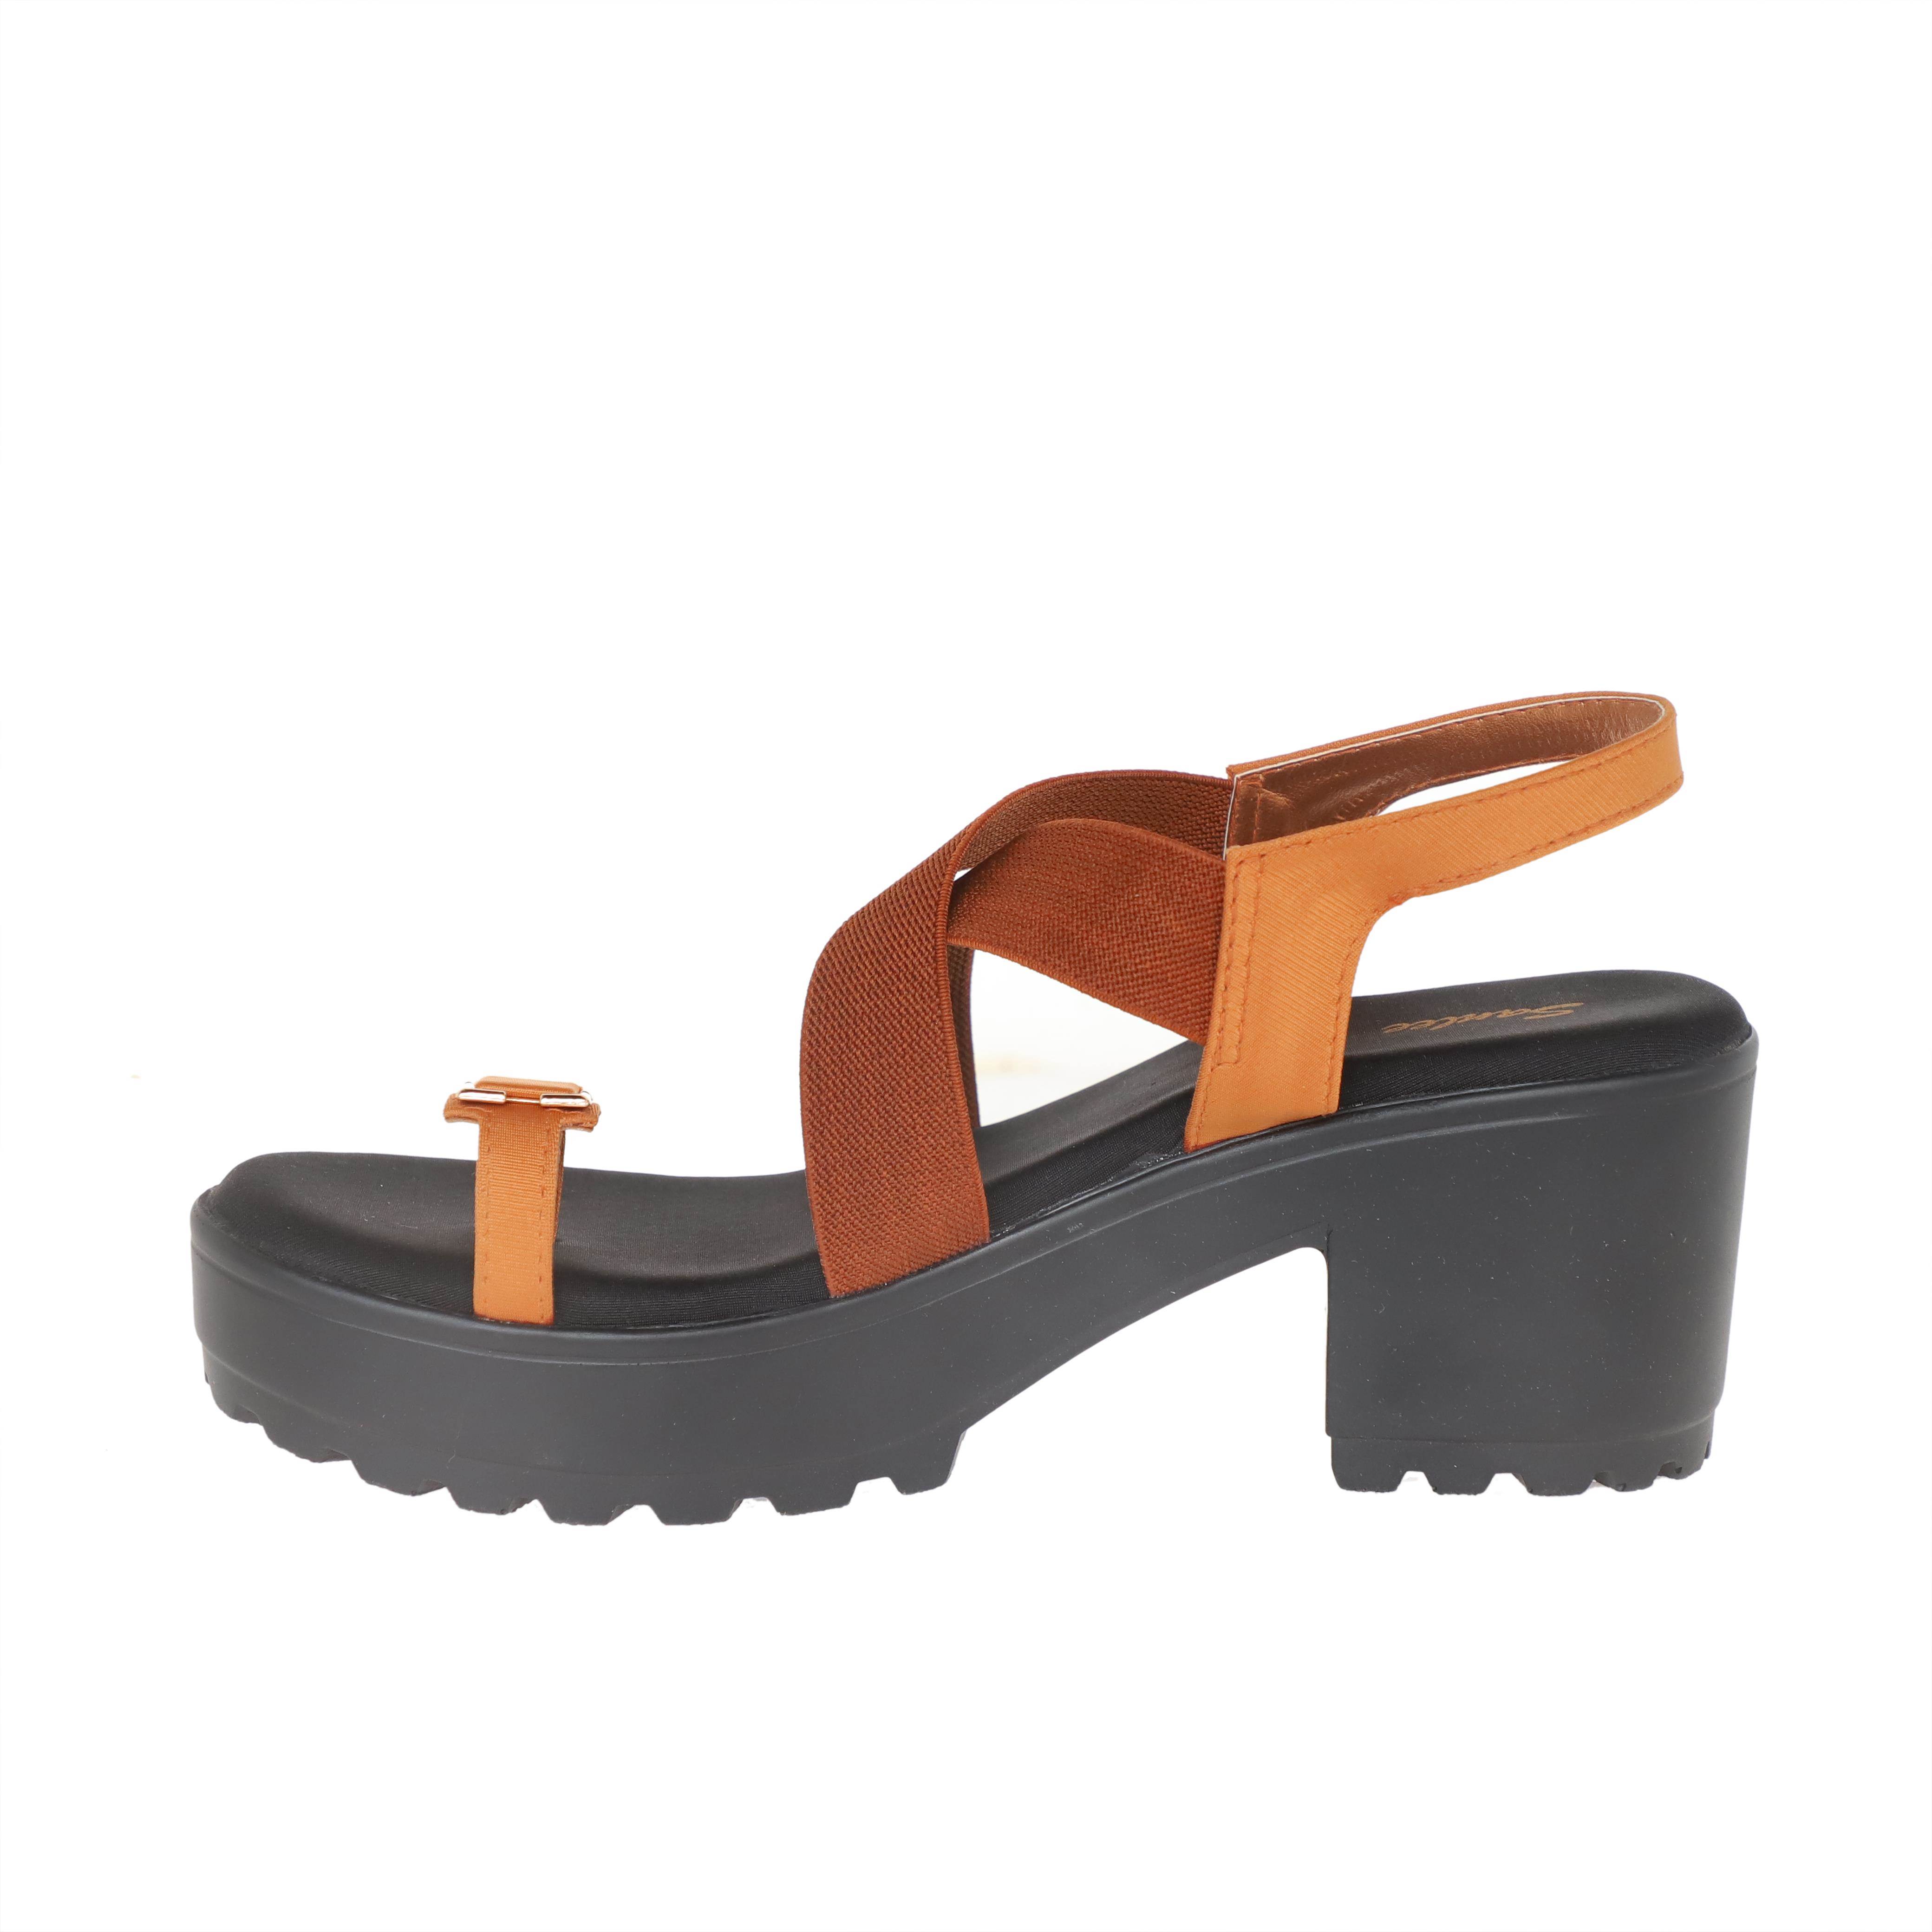 Sanlee Brand Womens Casual Block Heel Sandal LSP4127 (Tan) :: RAJASHOES